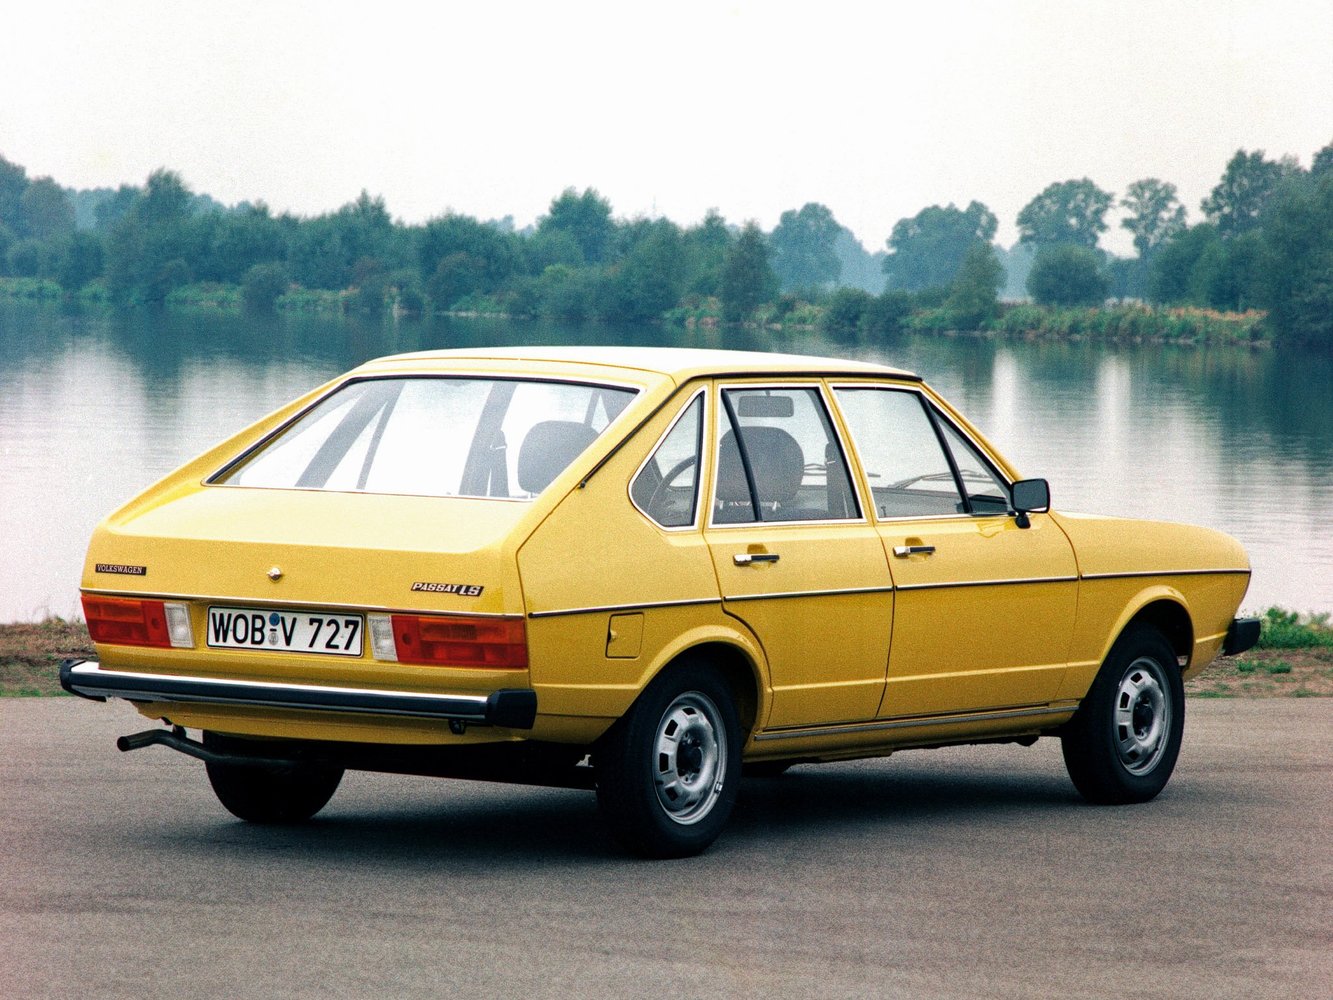 хэтчбек 5 дв. Volkswagen Passat 1973 - 1980г выпуска модификация 1.3 MT (55 л.с.)